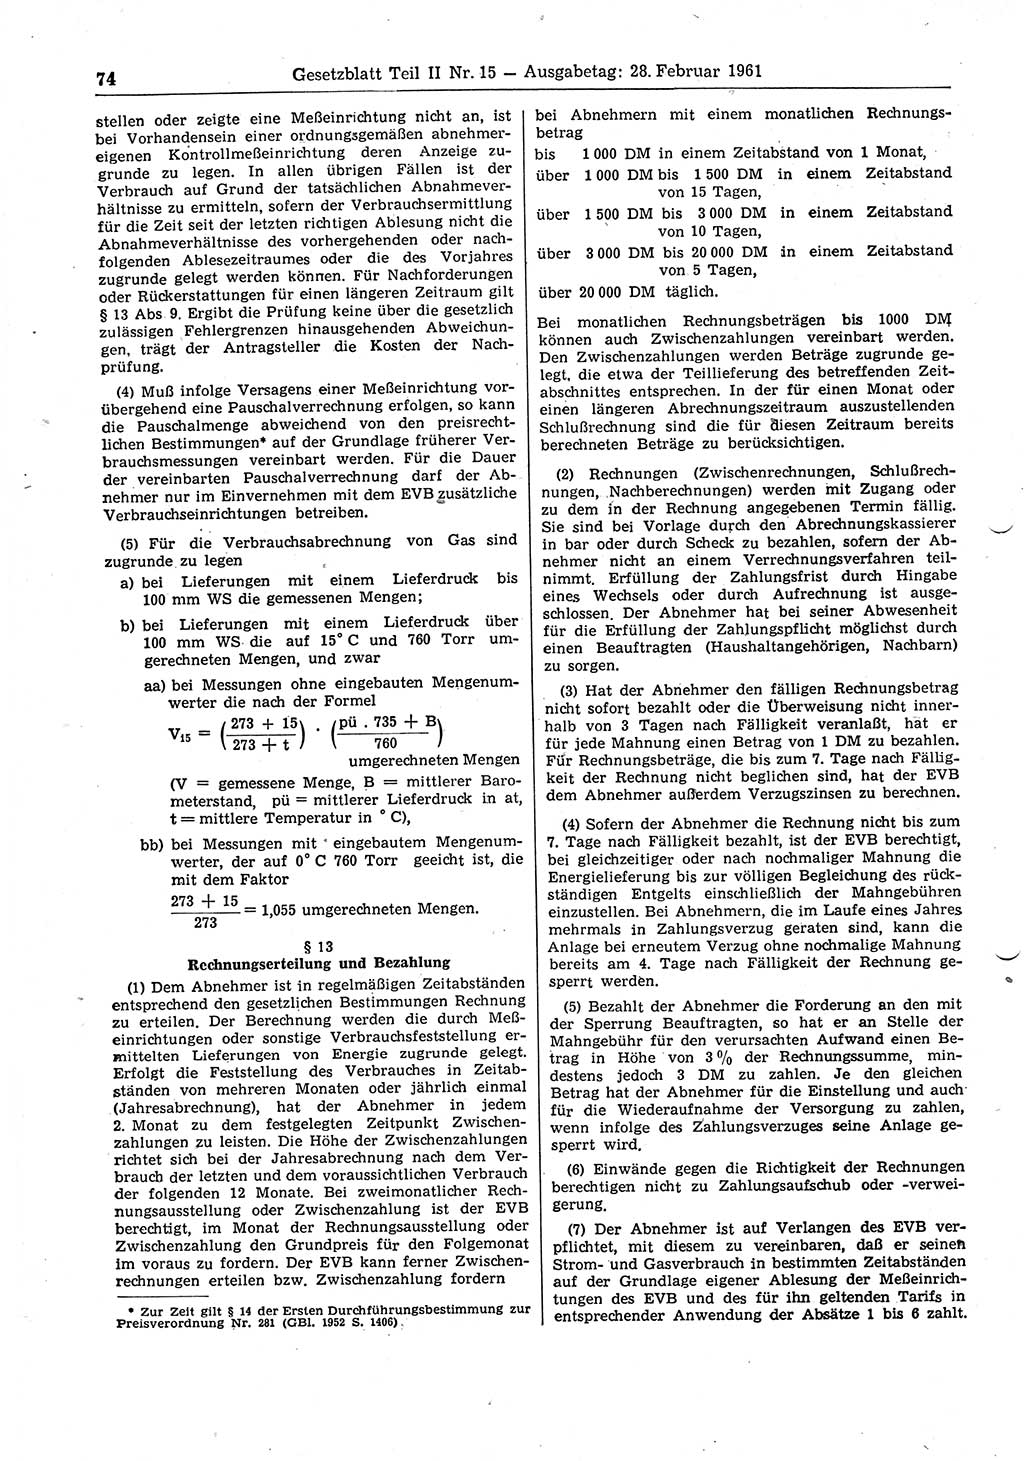 Gesetzblatt (GBl.) der Deutschen Demokratischen Republik (DDR) Teil ⅠⅠ 1961, Seite 74 (GBl. DDR ⅠⅠ 1961, S. 74)